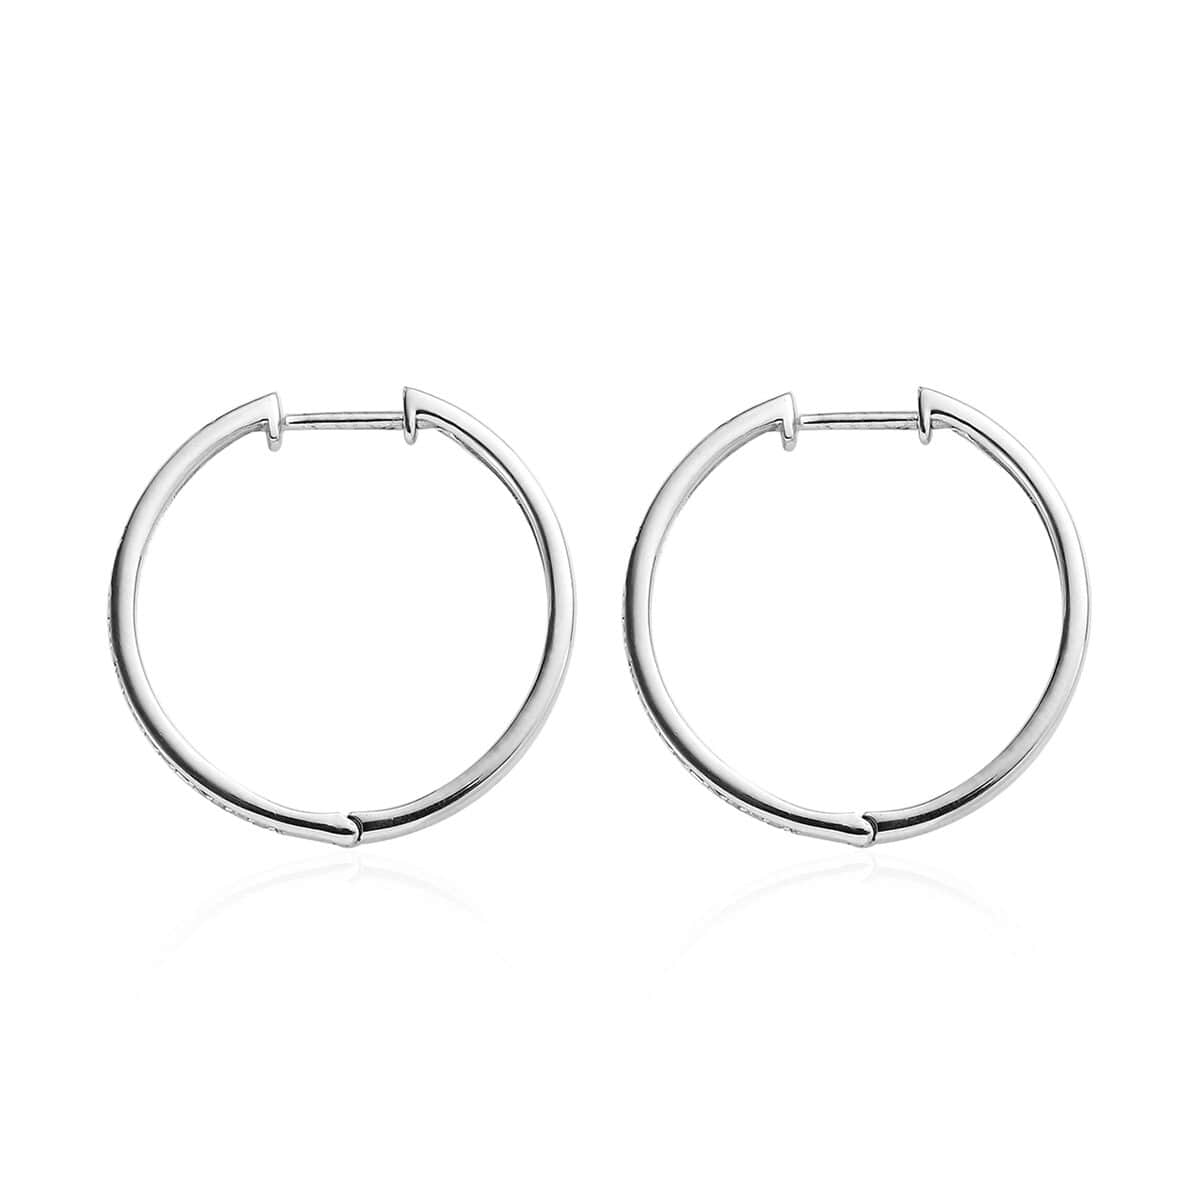 Buy Diamond Hoop Earrings in Platinum Over Sterling Silver 0.50 ctw at ...